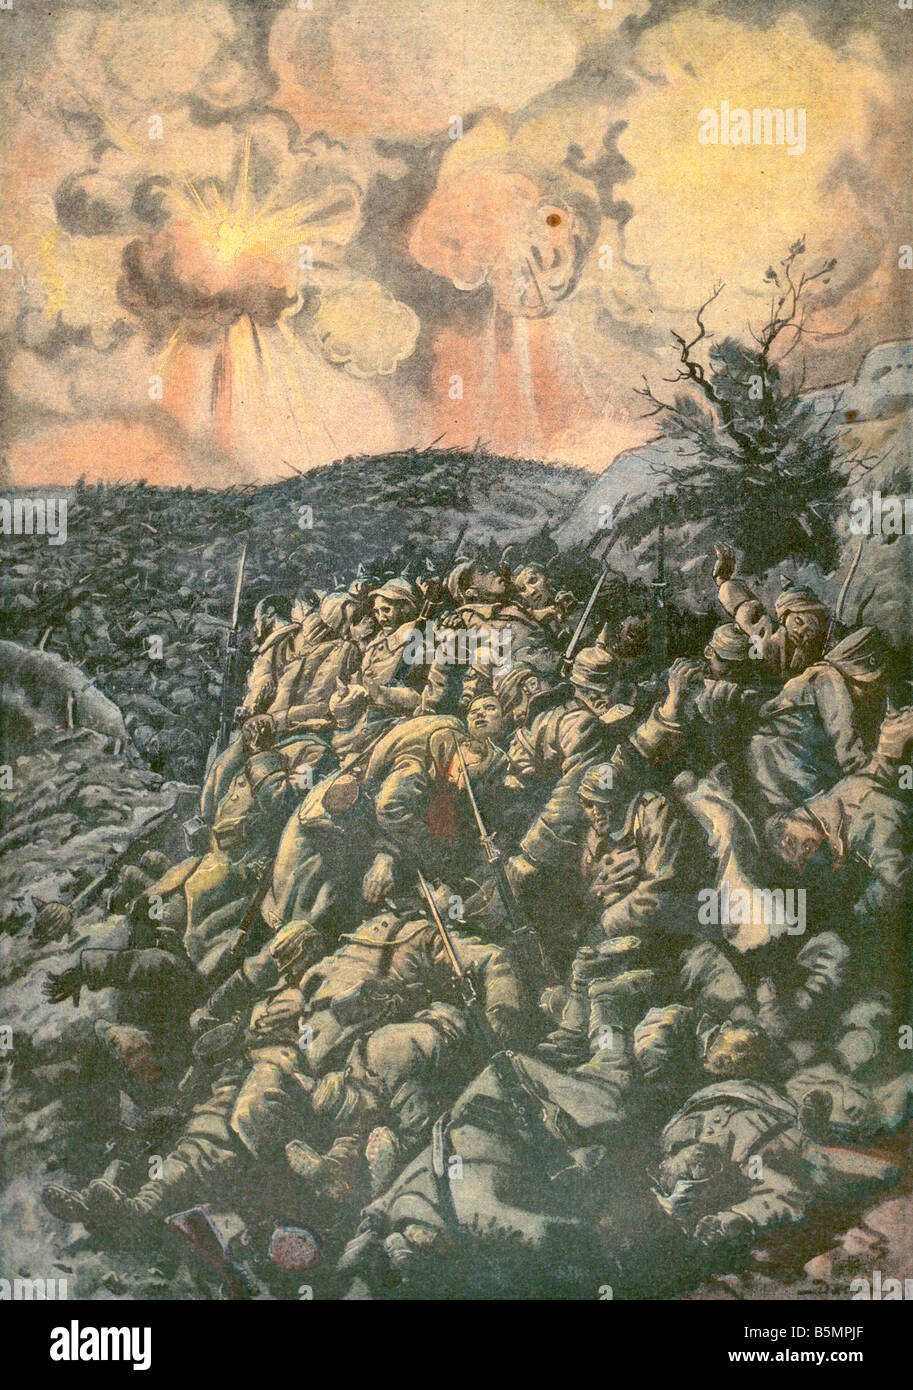 9 1916 3 0 A1 1 Schlacht um Verdun 1916 Pet Journal 1. Weltkrieg westlichen Front Schlacht von Verdun Februar bis September 1916 Les Mort Stockfoto